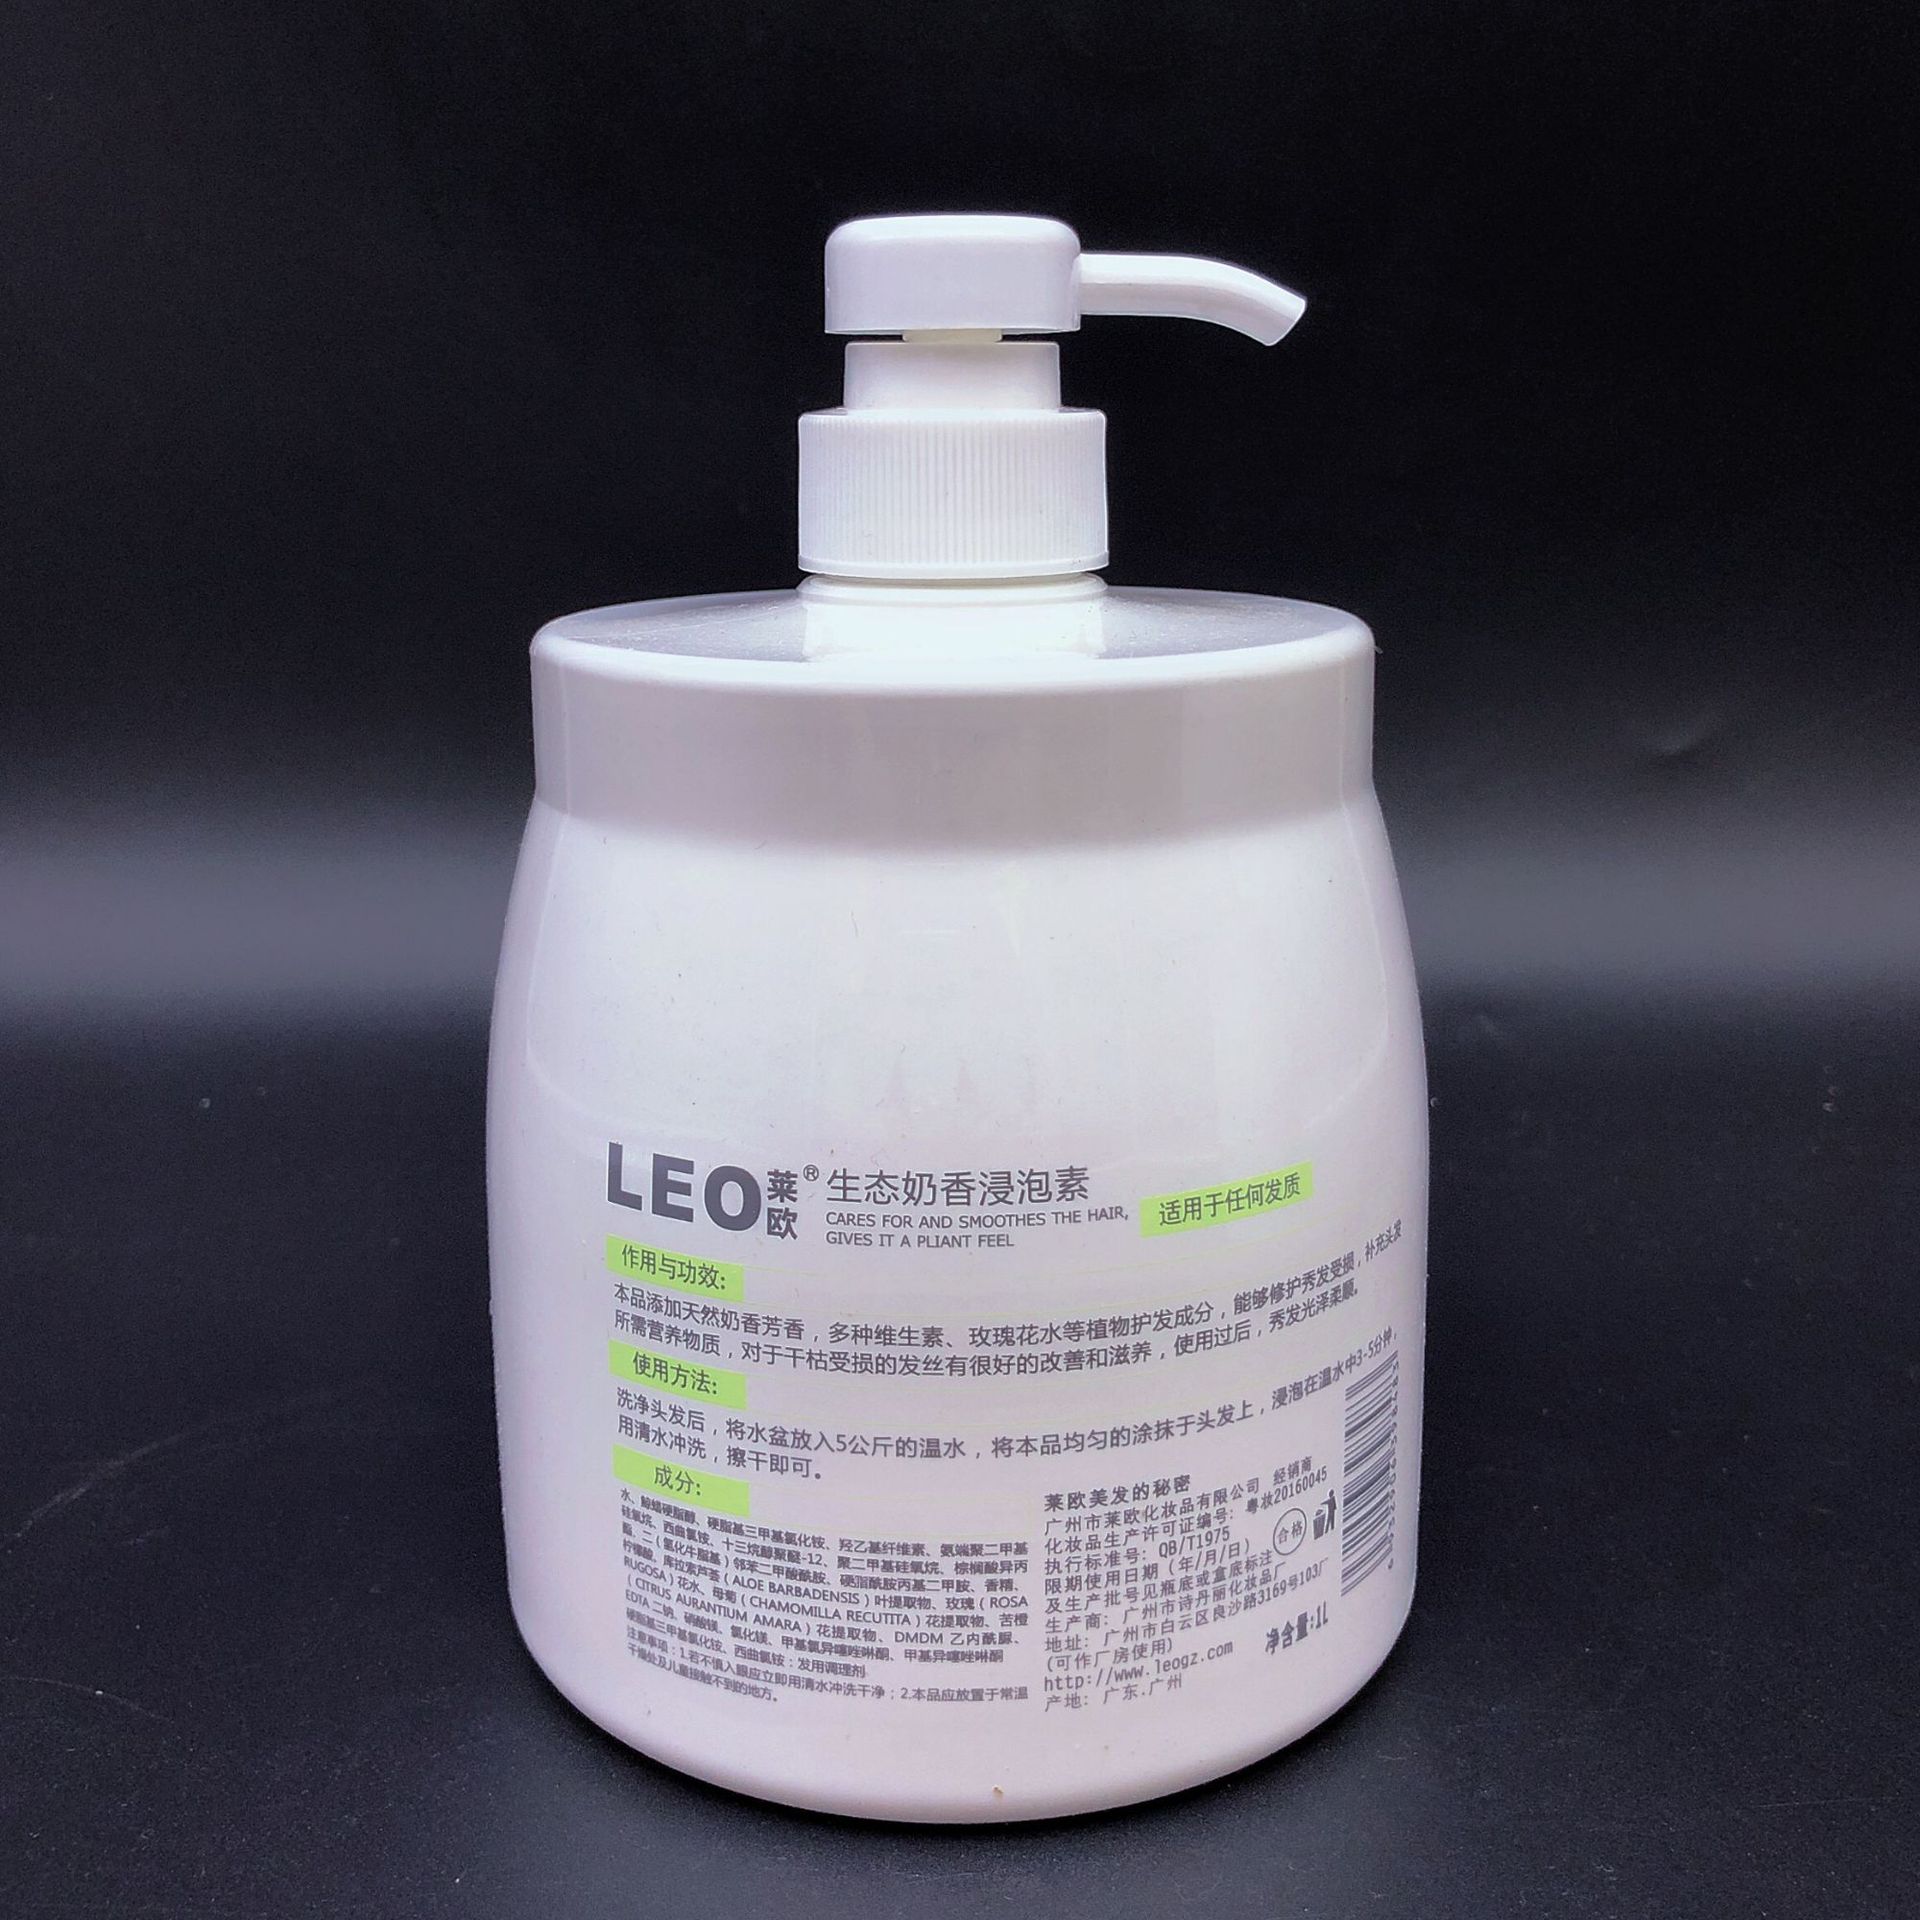 LEO莱欧浸泡素水护发素发膜美发护理系列美发产品 - 图1